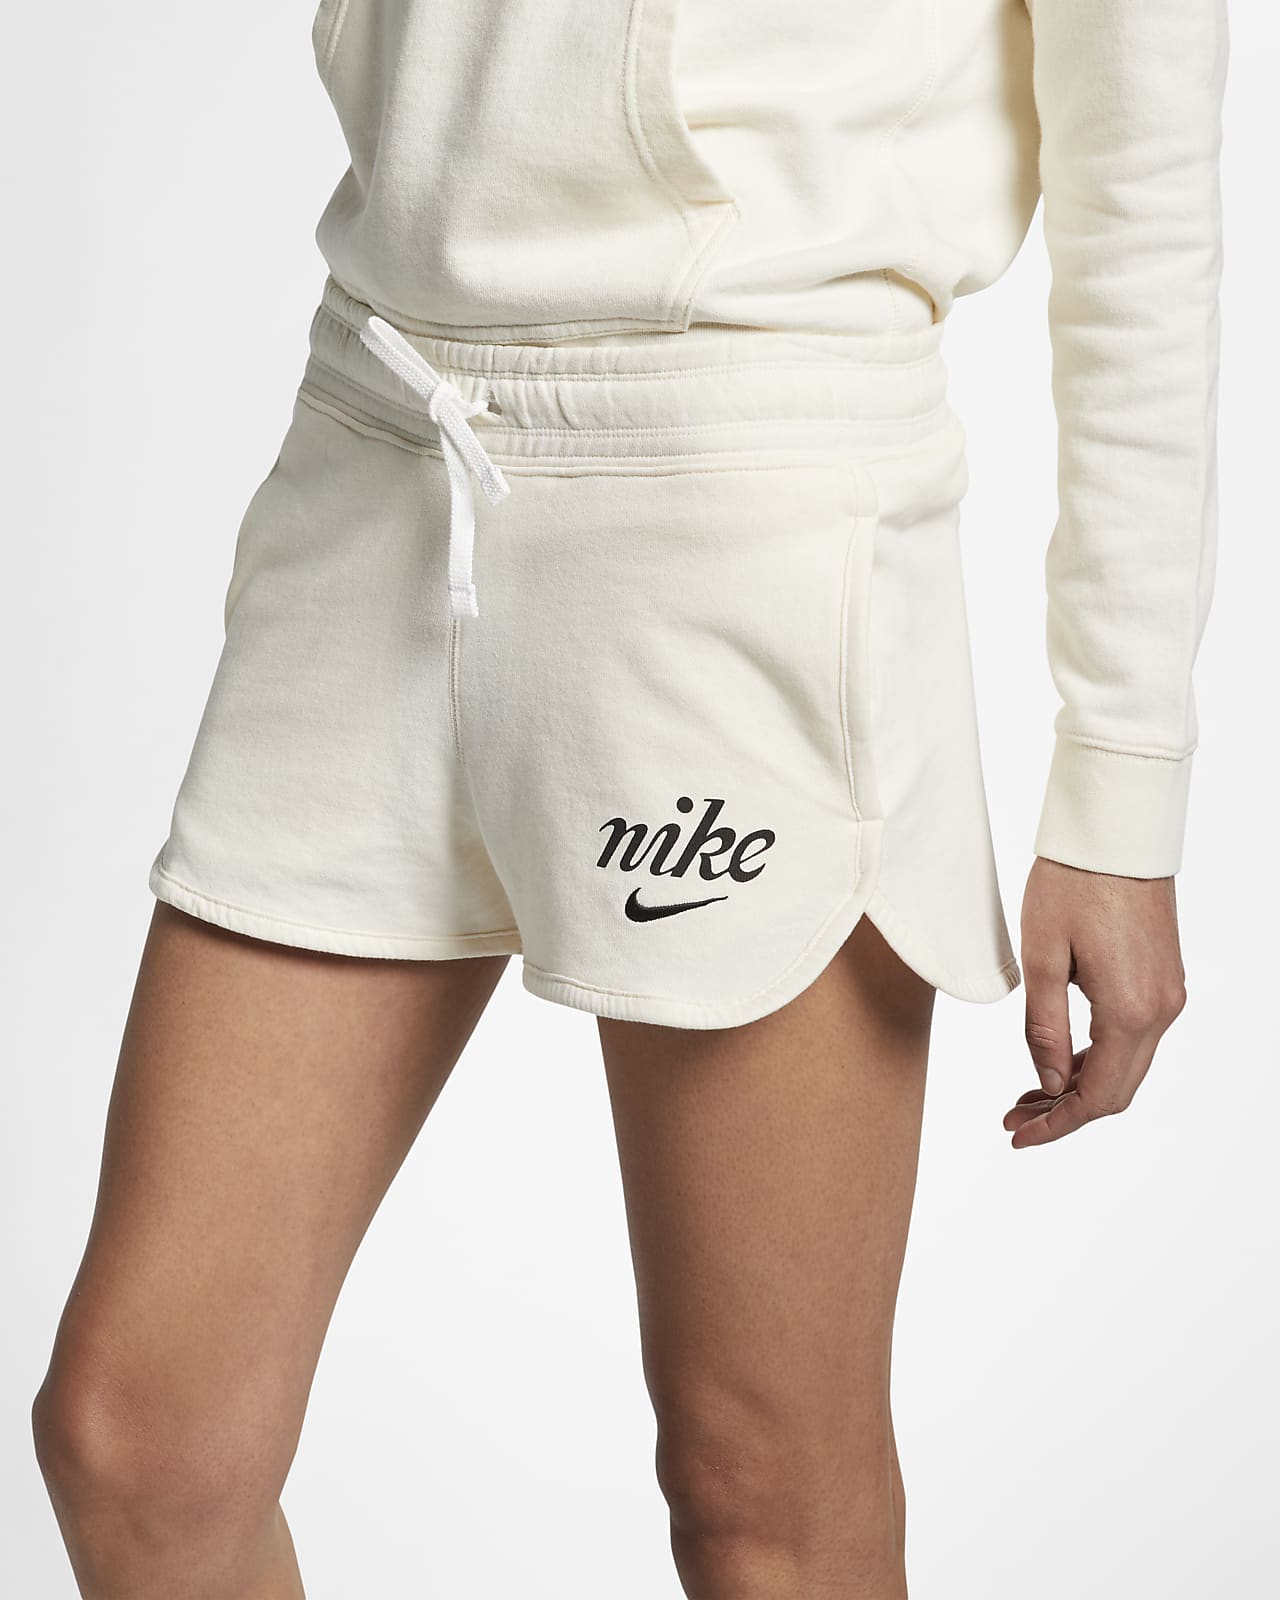 women's nike sportswear shorts